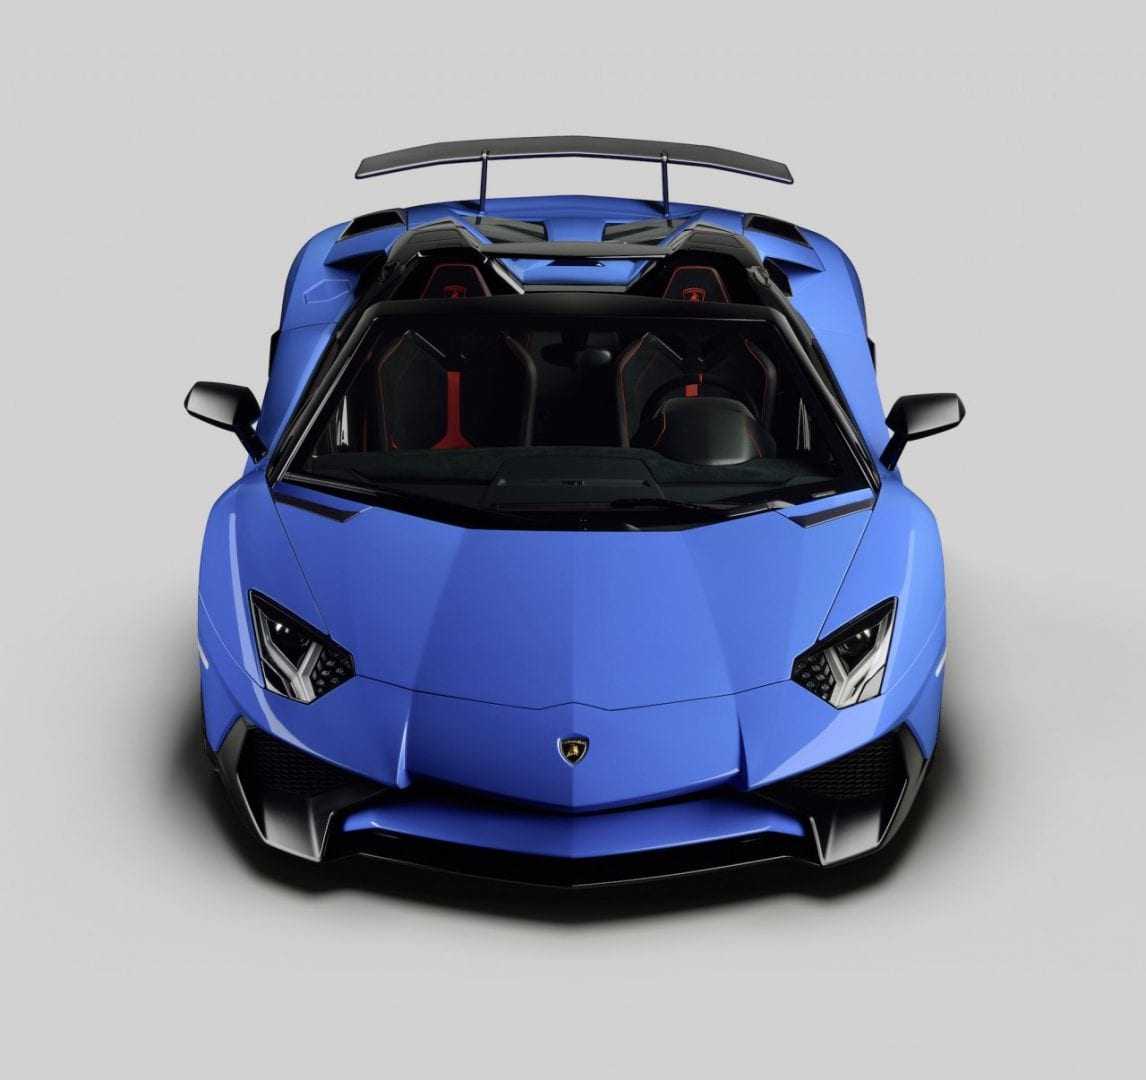 Lamborghini-Aventador-LP-750-4-Superveloce-Roadster